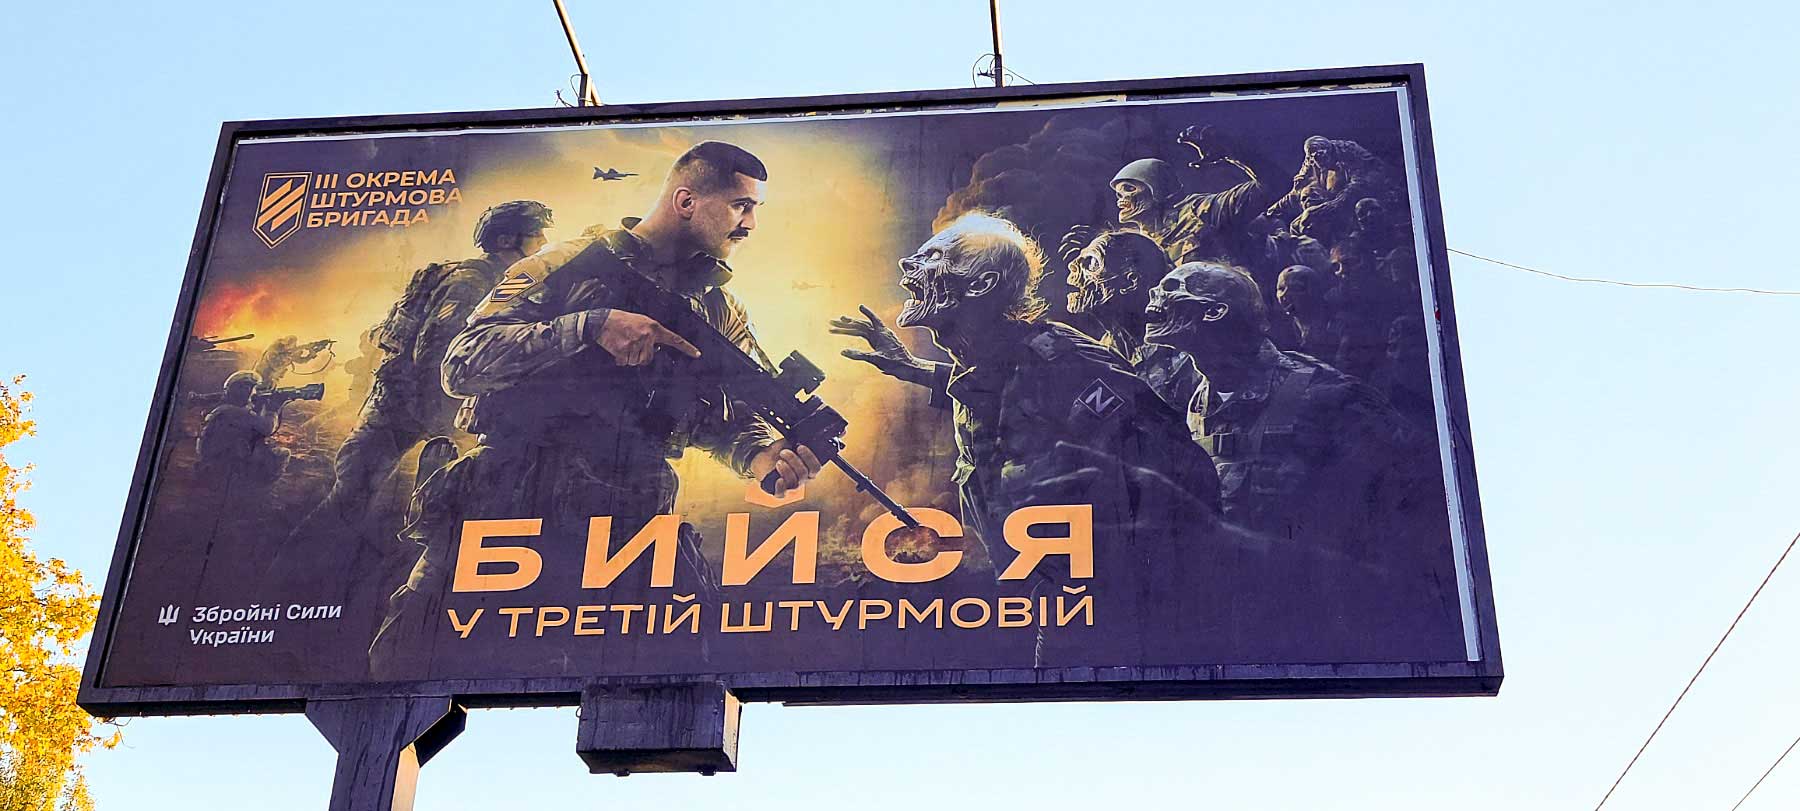 โฆษณาดังกล่าวถูกโพสต์ในเคียฟเพื่อเชิญชวนให้คุณเข้าร่วมหน่วยทหารของกองทัพแห่งยูเครน